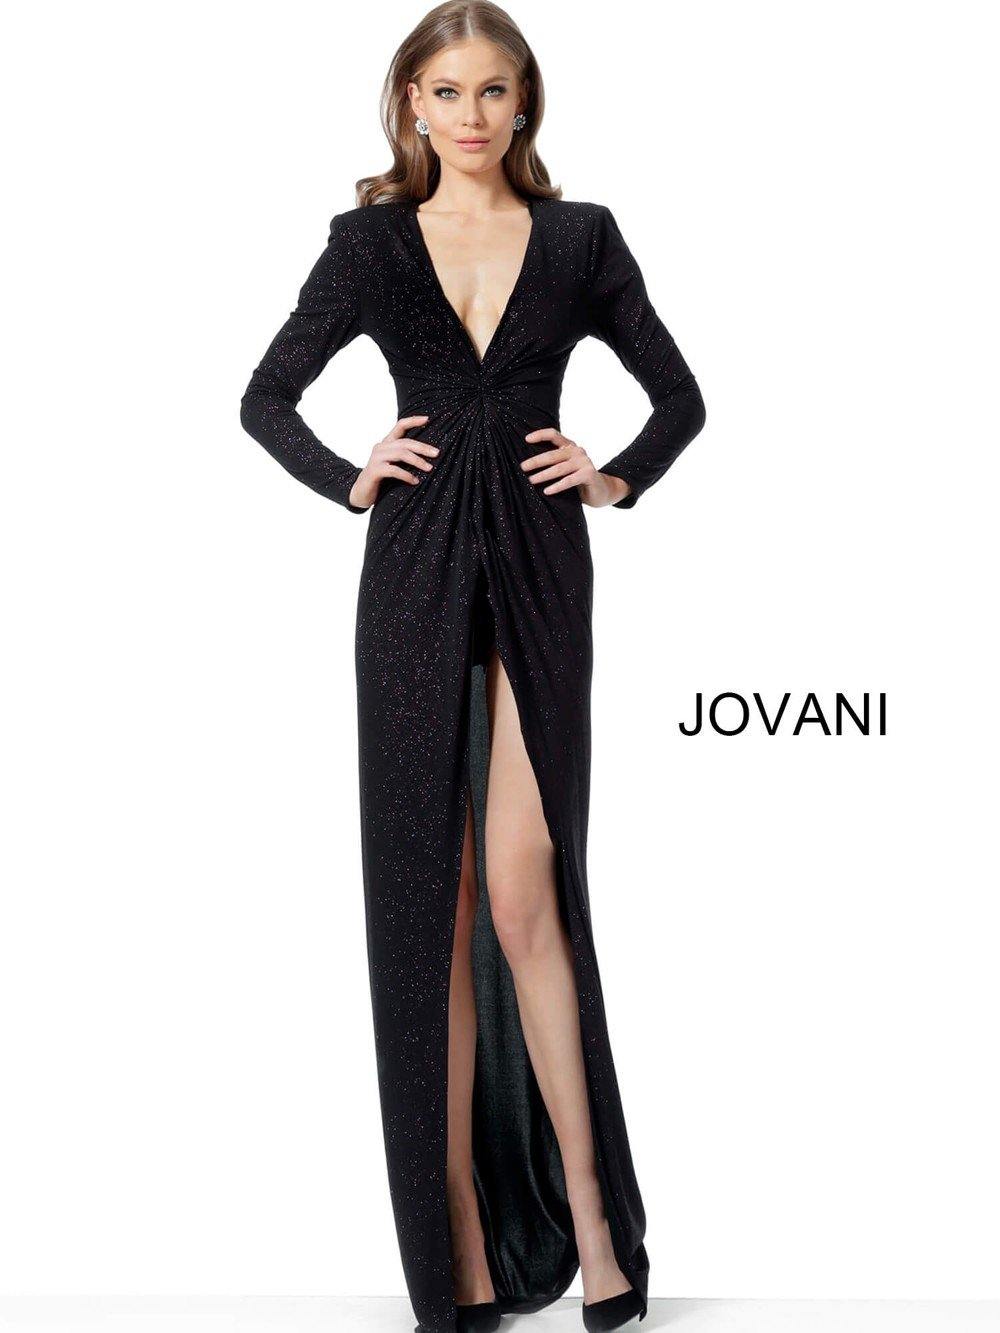 Jovani Prom Long Dress JVN1708 - The Dress Outlet